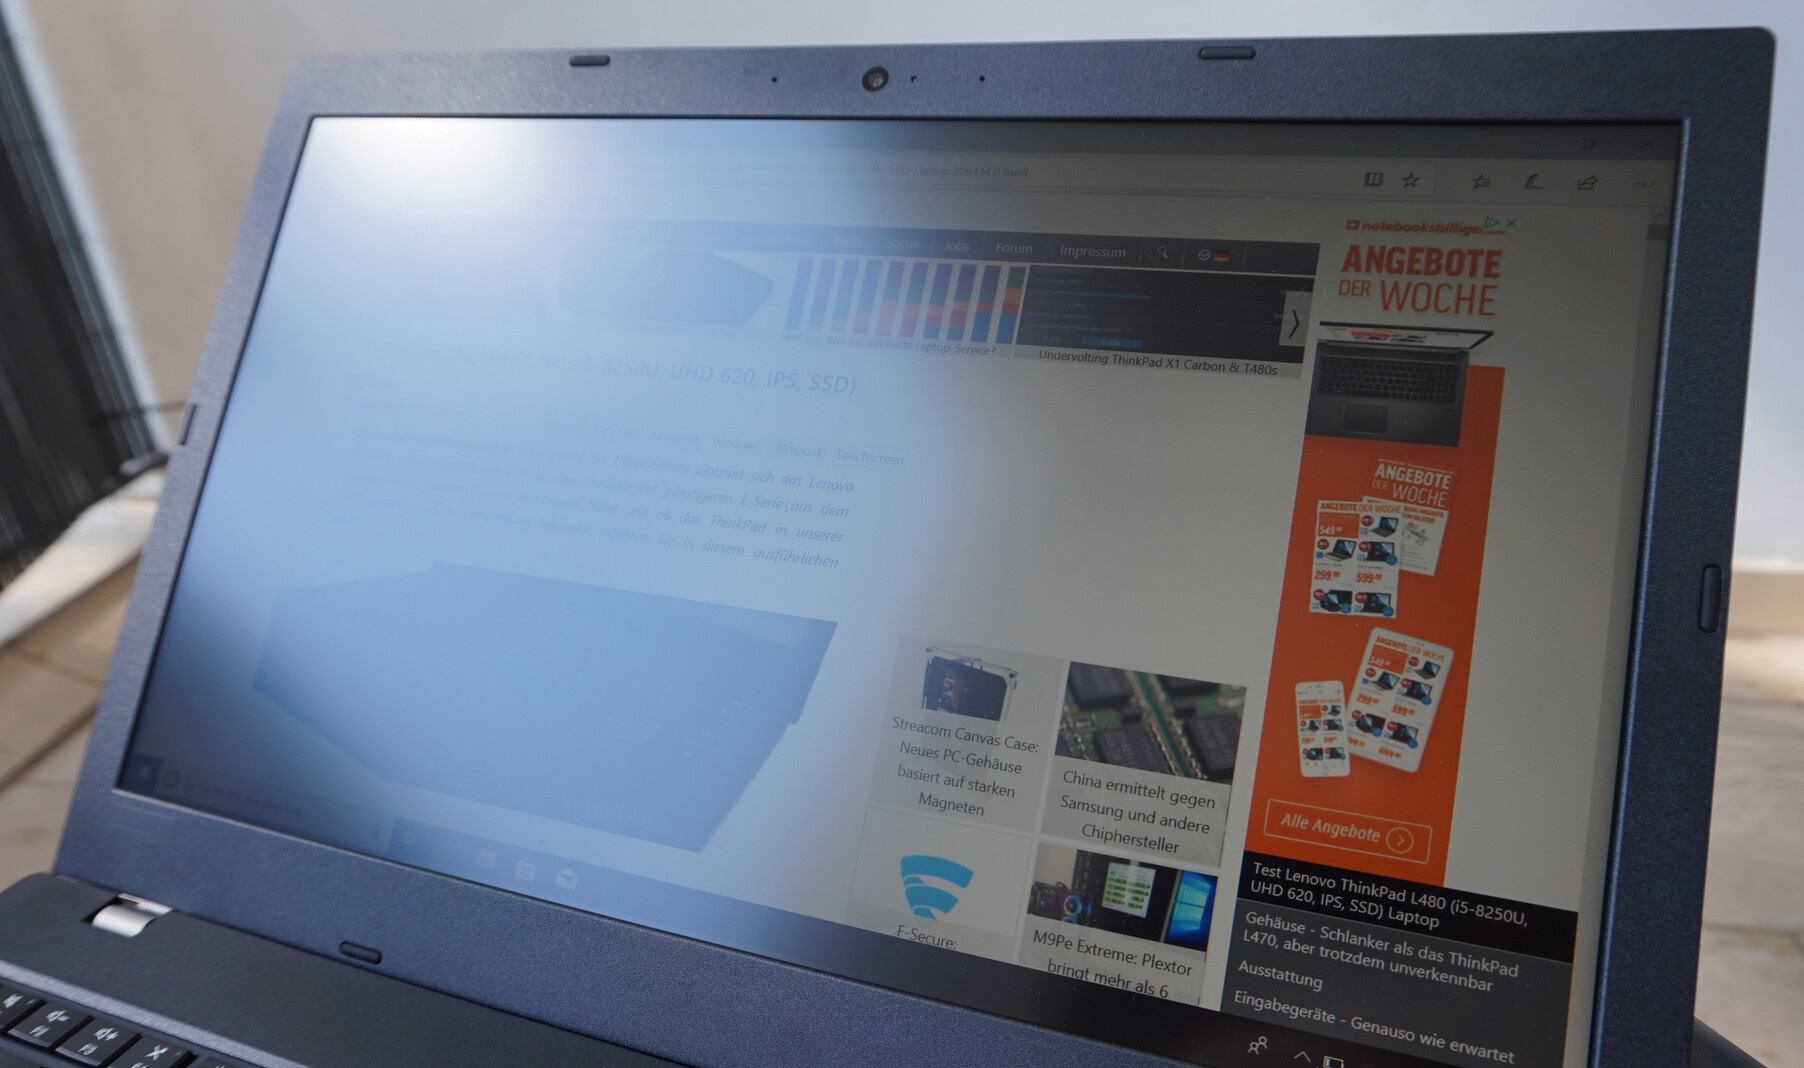 Đánh giá Lenovo ThinkPad L580: Cải tiến mạnh mẽ so với thế hệ cũ !, chuyên trang tư vấn laptop